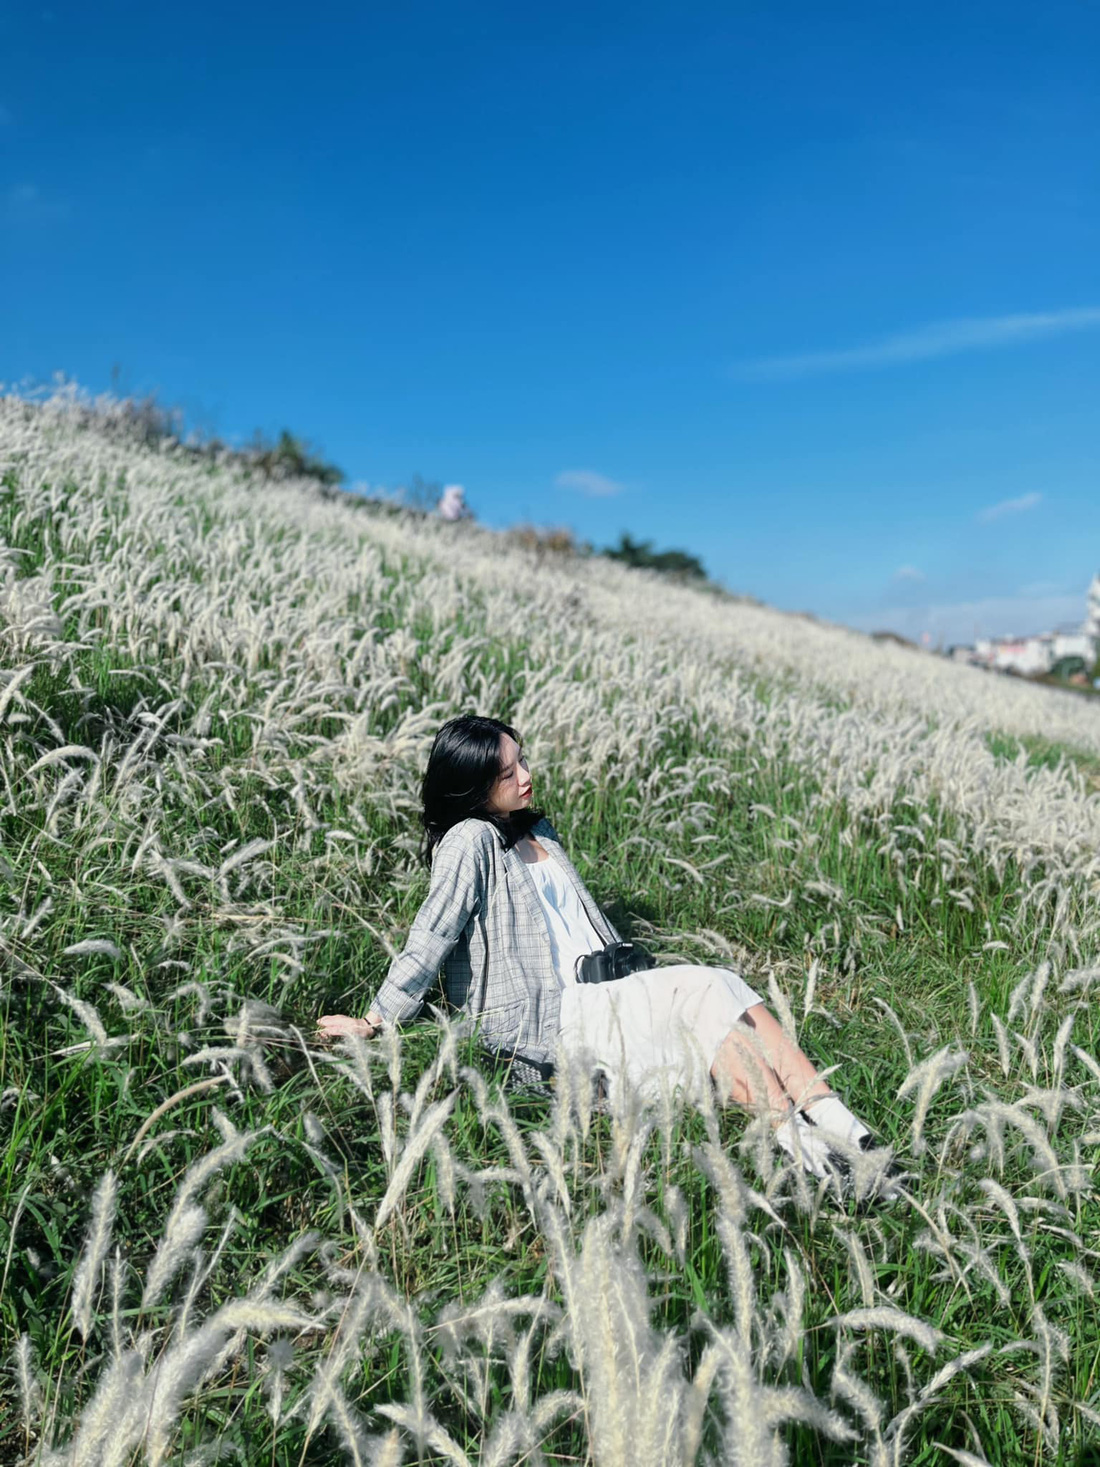 Ra đê Long Biên chụp ảnh giữa trắng ngàn cỏ lau - Ảnh 2.